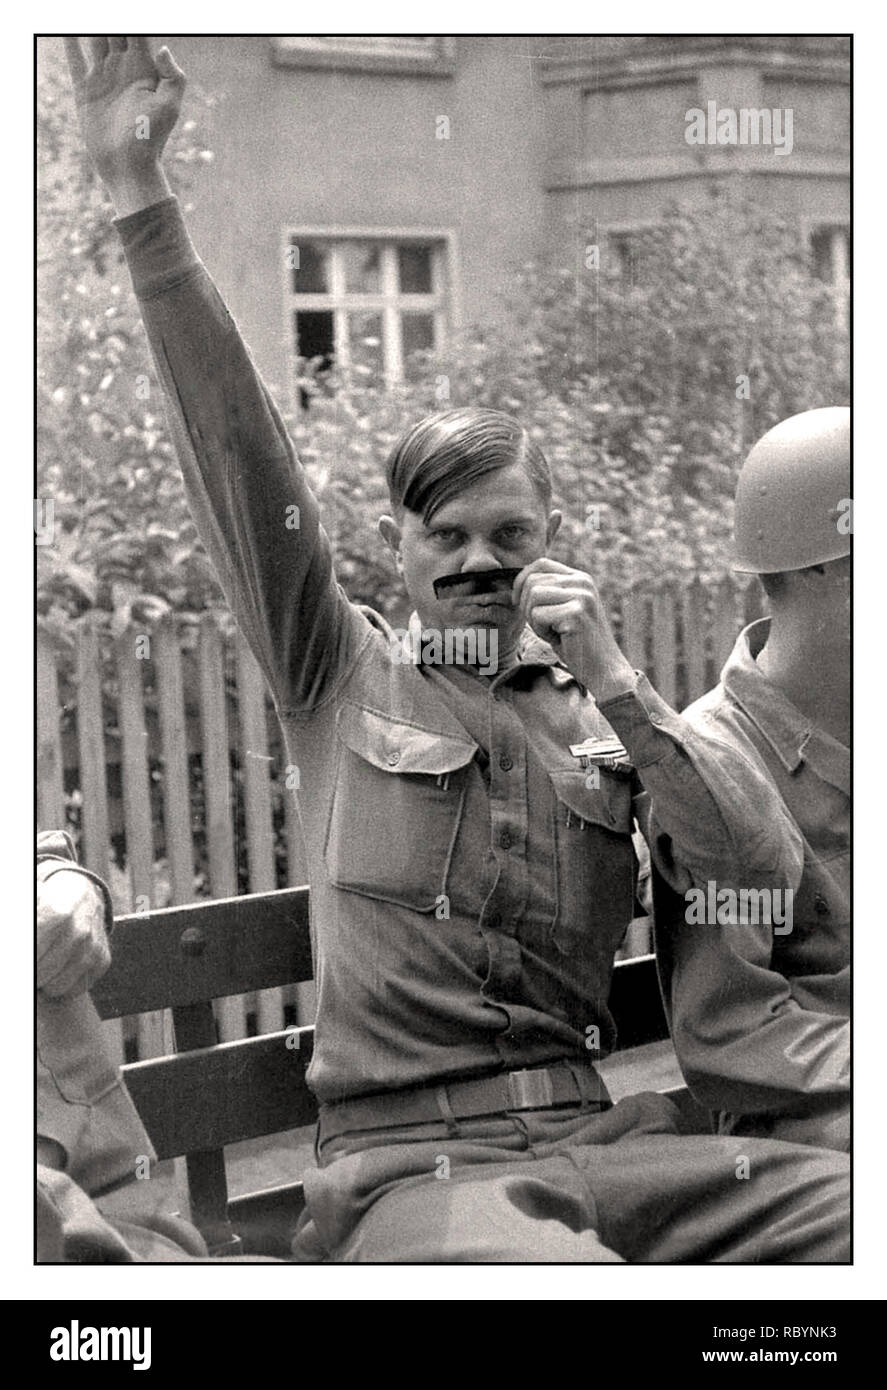 WW2 moment d'humour avec un soldat américain qui pose pour une photographie le mimicing Reichsfuhrer nazie du Troisième Reich d'Adolf Hitler. 1945. Banque D'Images